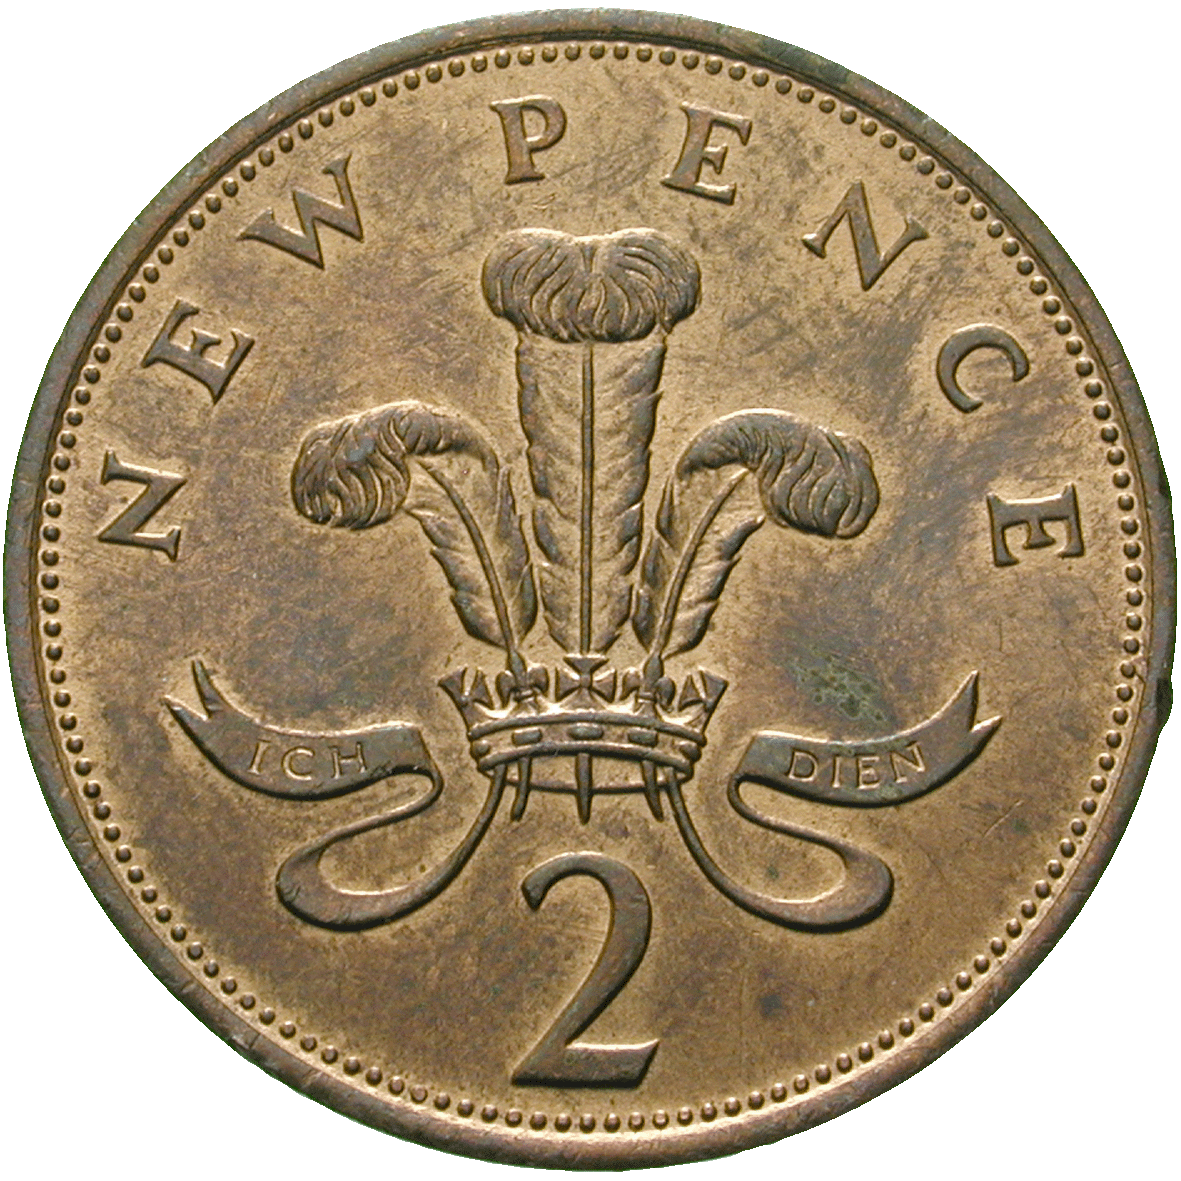 Vereinigtes Königreich Grossbritannien, Elisabeth II., 2 New Pence 1980 (reverse)